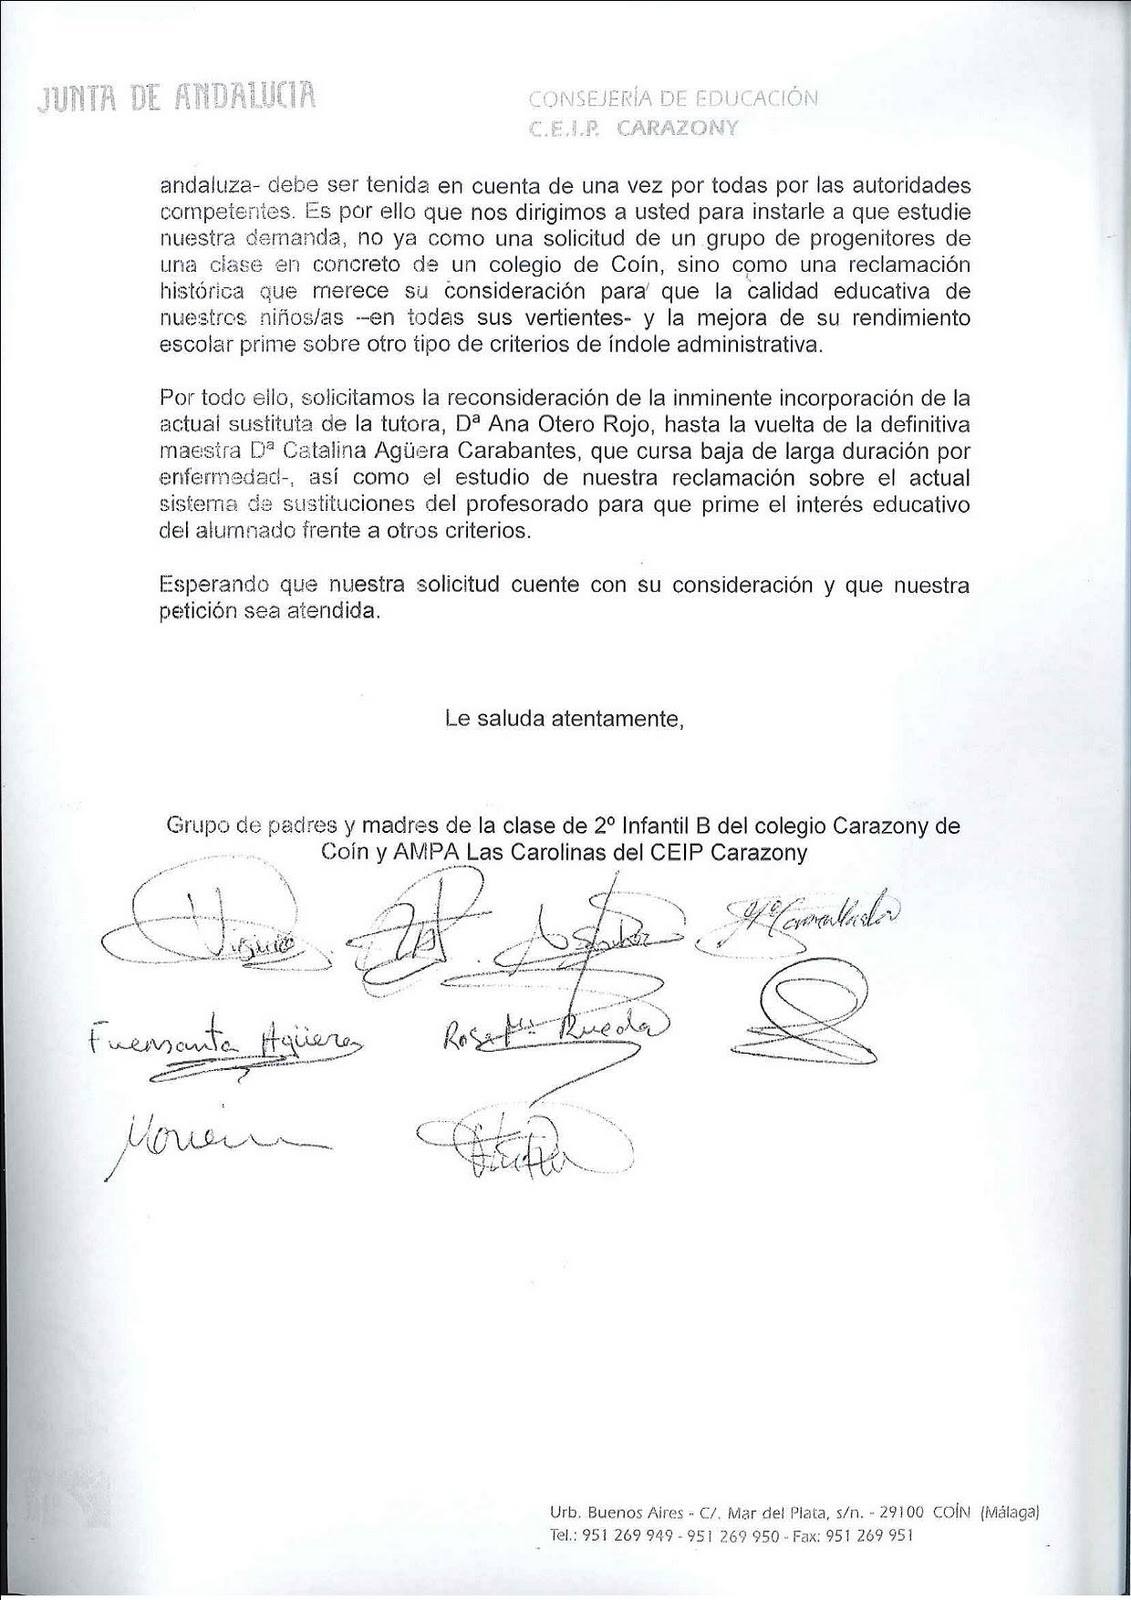 AMPA Las Carolinas_CEIP Carazony Coín (Málaga): Carta al 